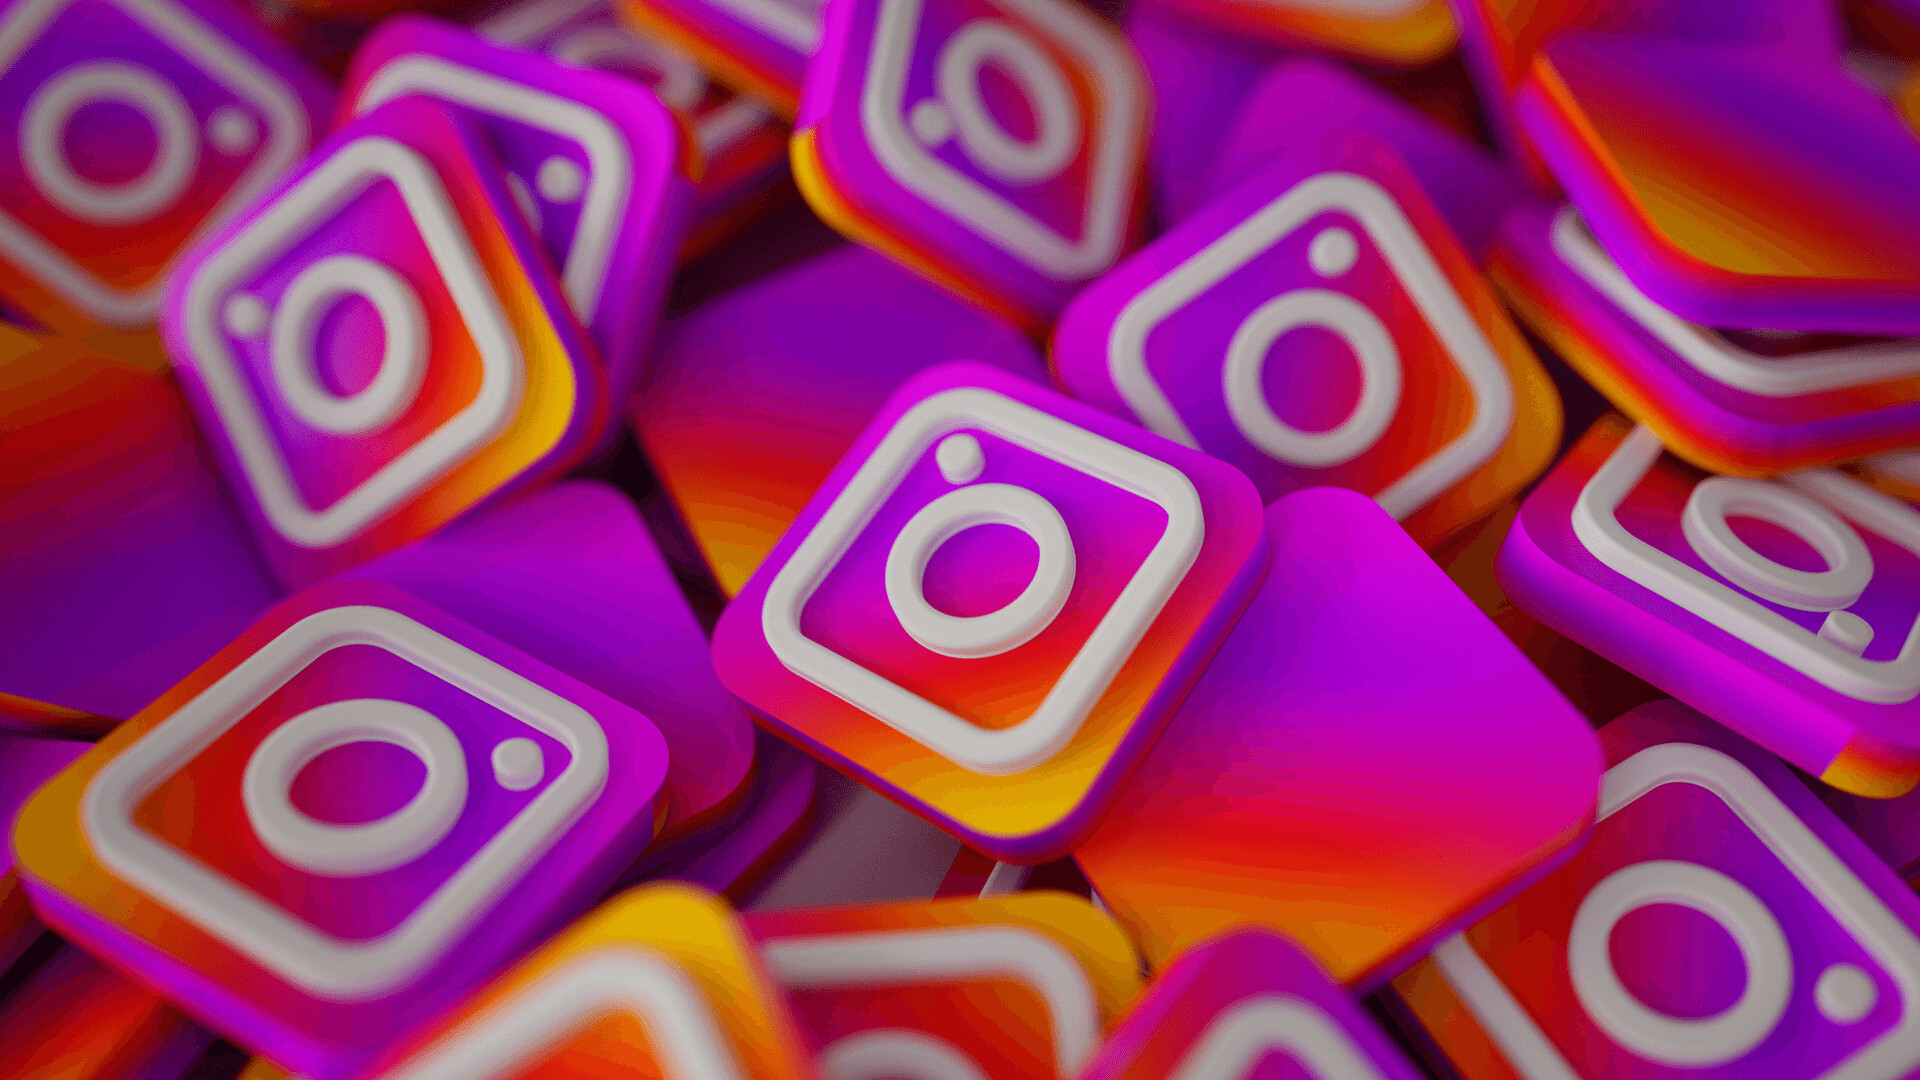 Instagram: Social media, Insta, Online photo-sharing. 1920x1080 Full HD Wallpaper.